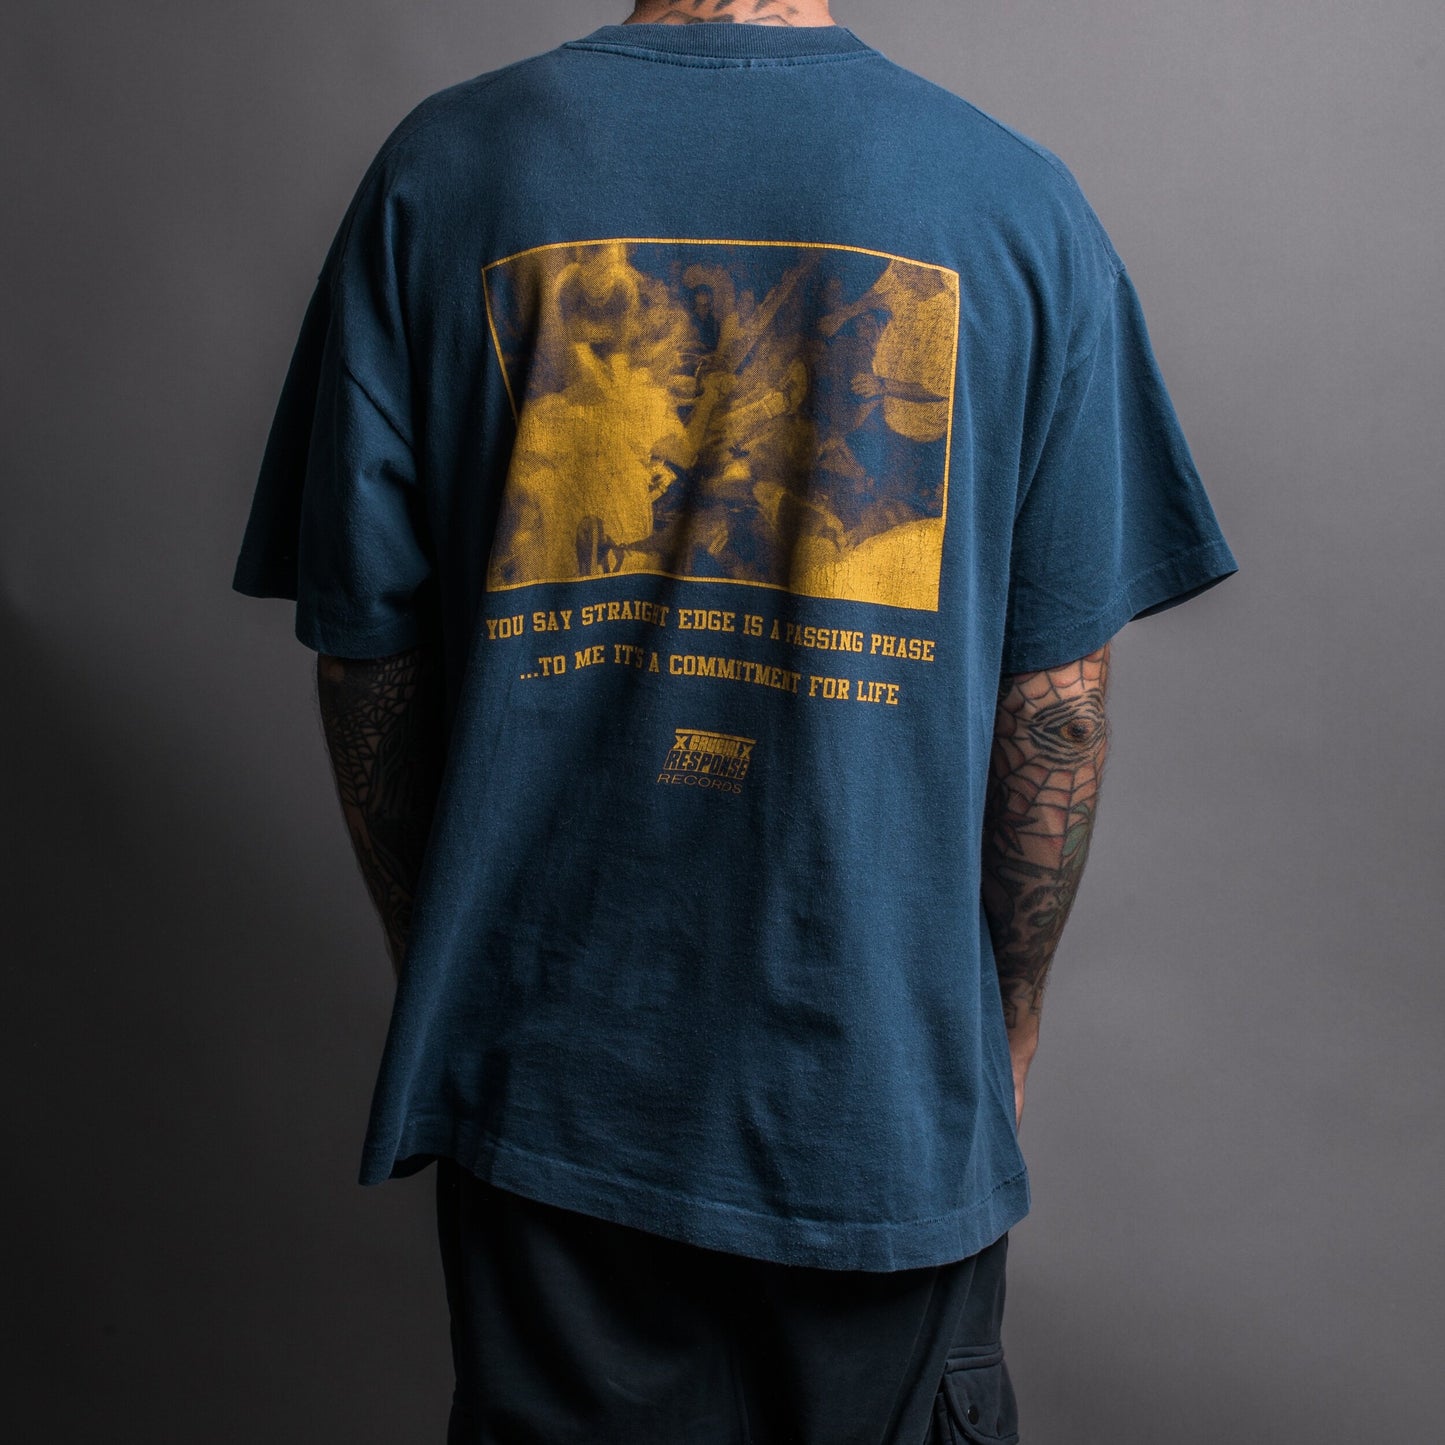 Vintage 90’s Mainstrike T-Shirt